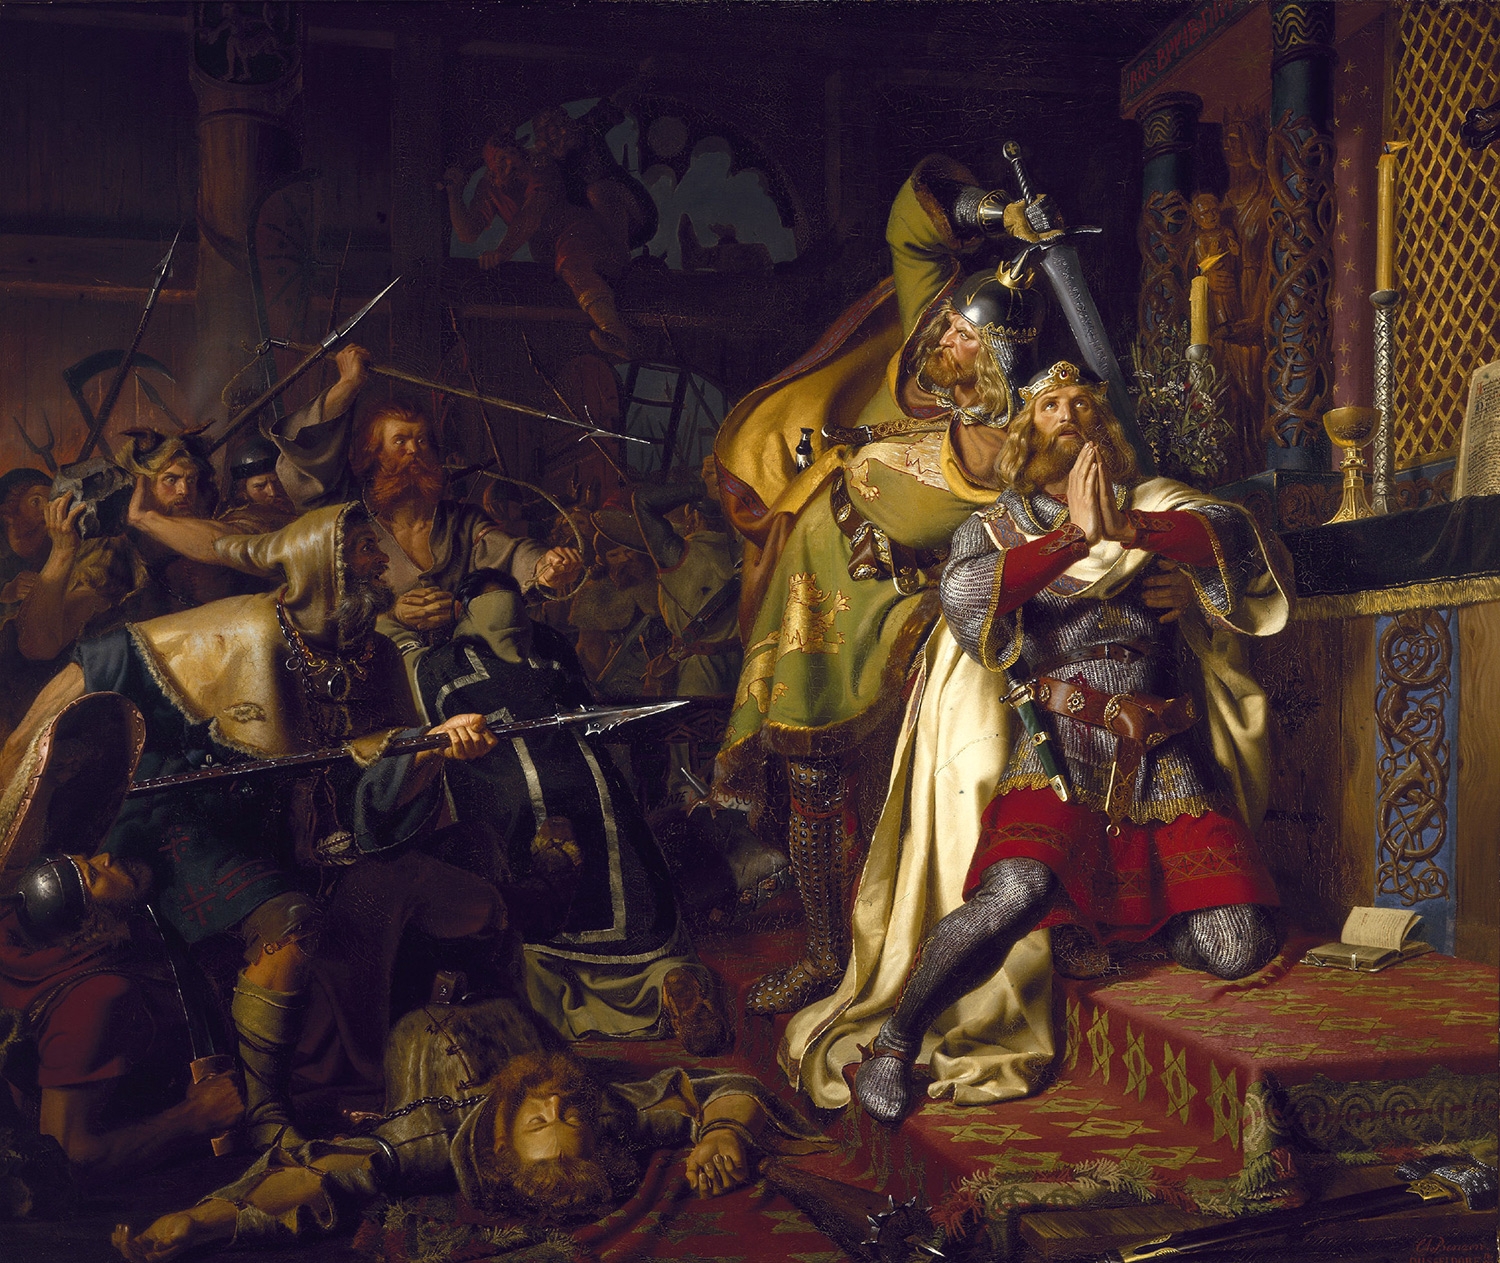 Knut den helliges død illustrert på et maleri av Christian Albrecht von Benzon.